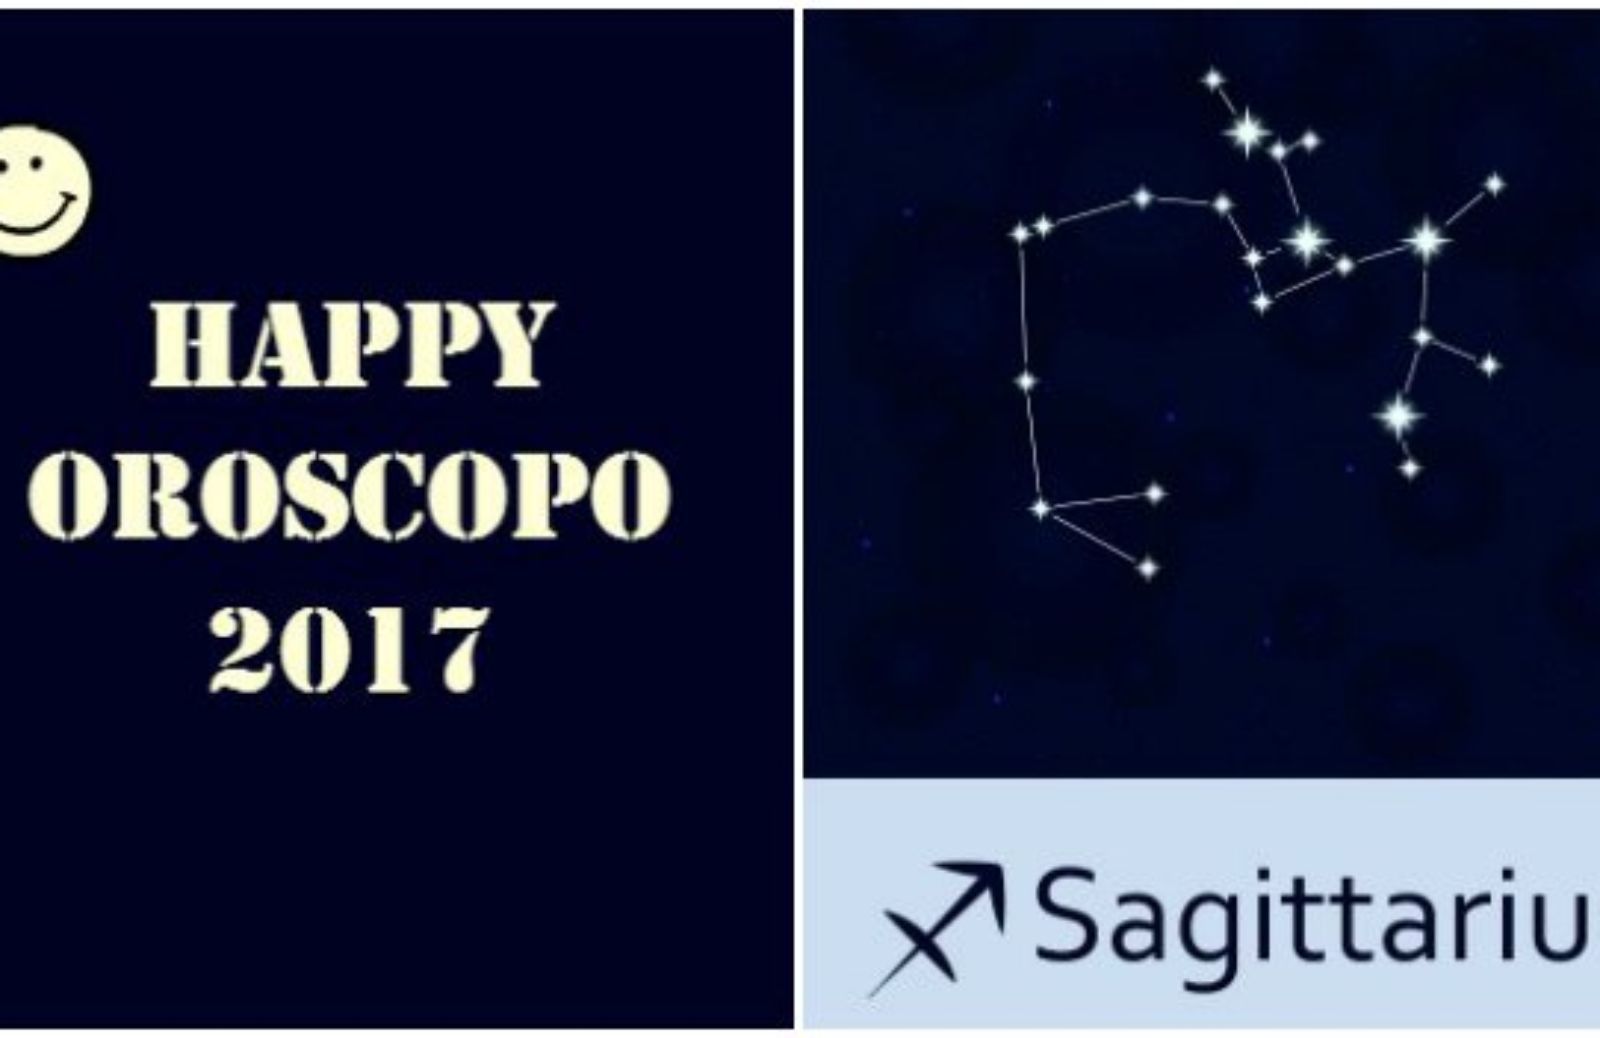 Happy Oroscopo 2017: il segno del Sagittario